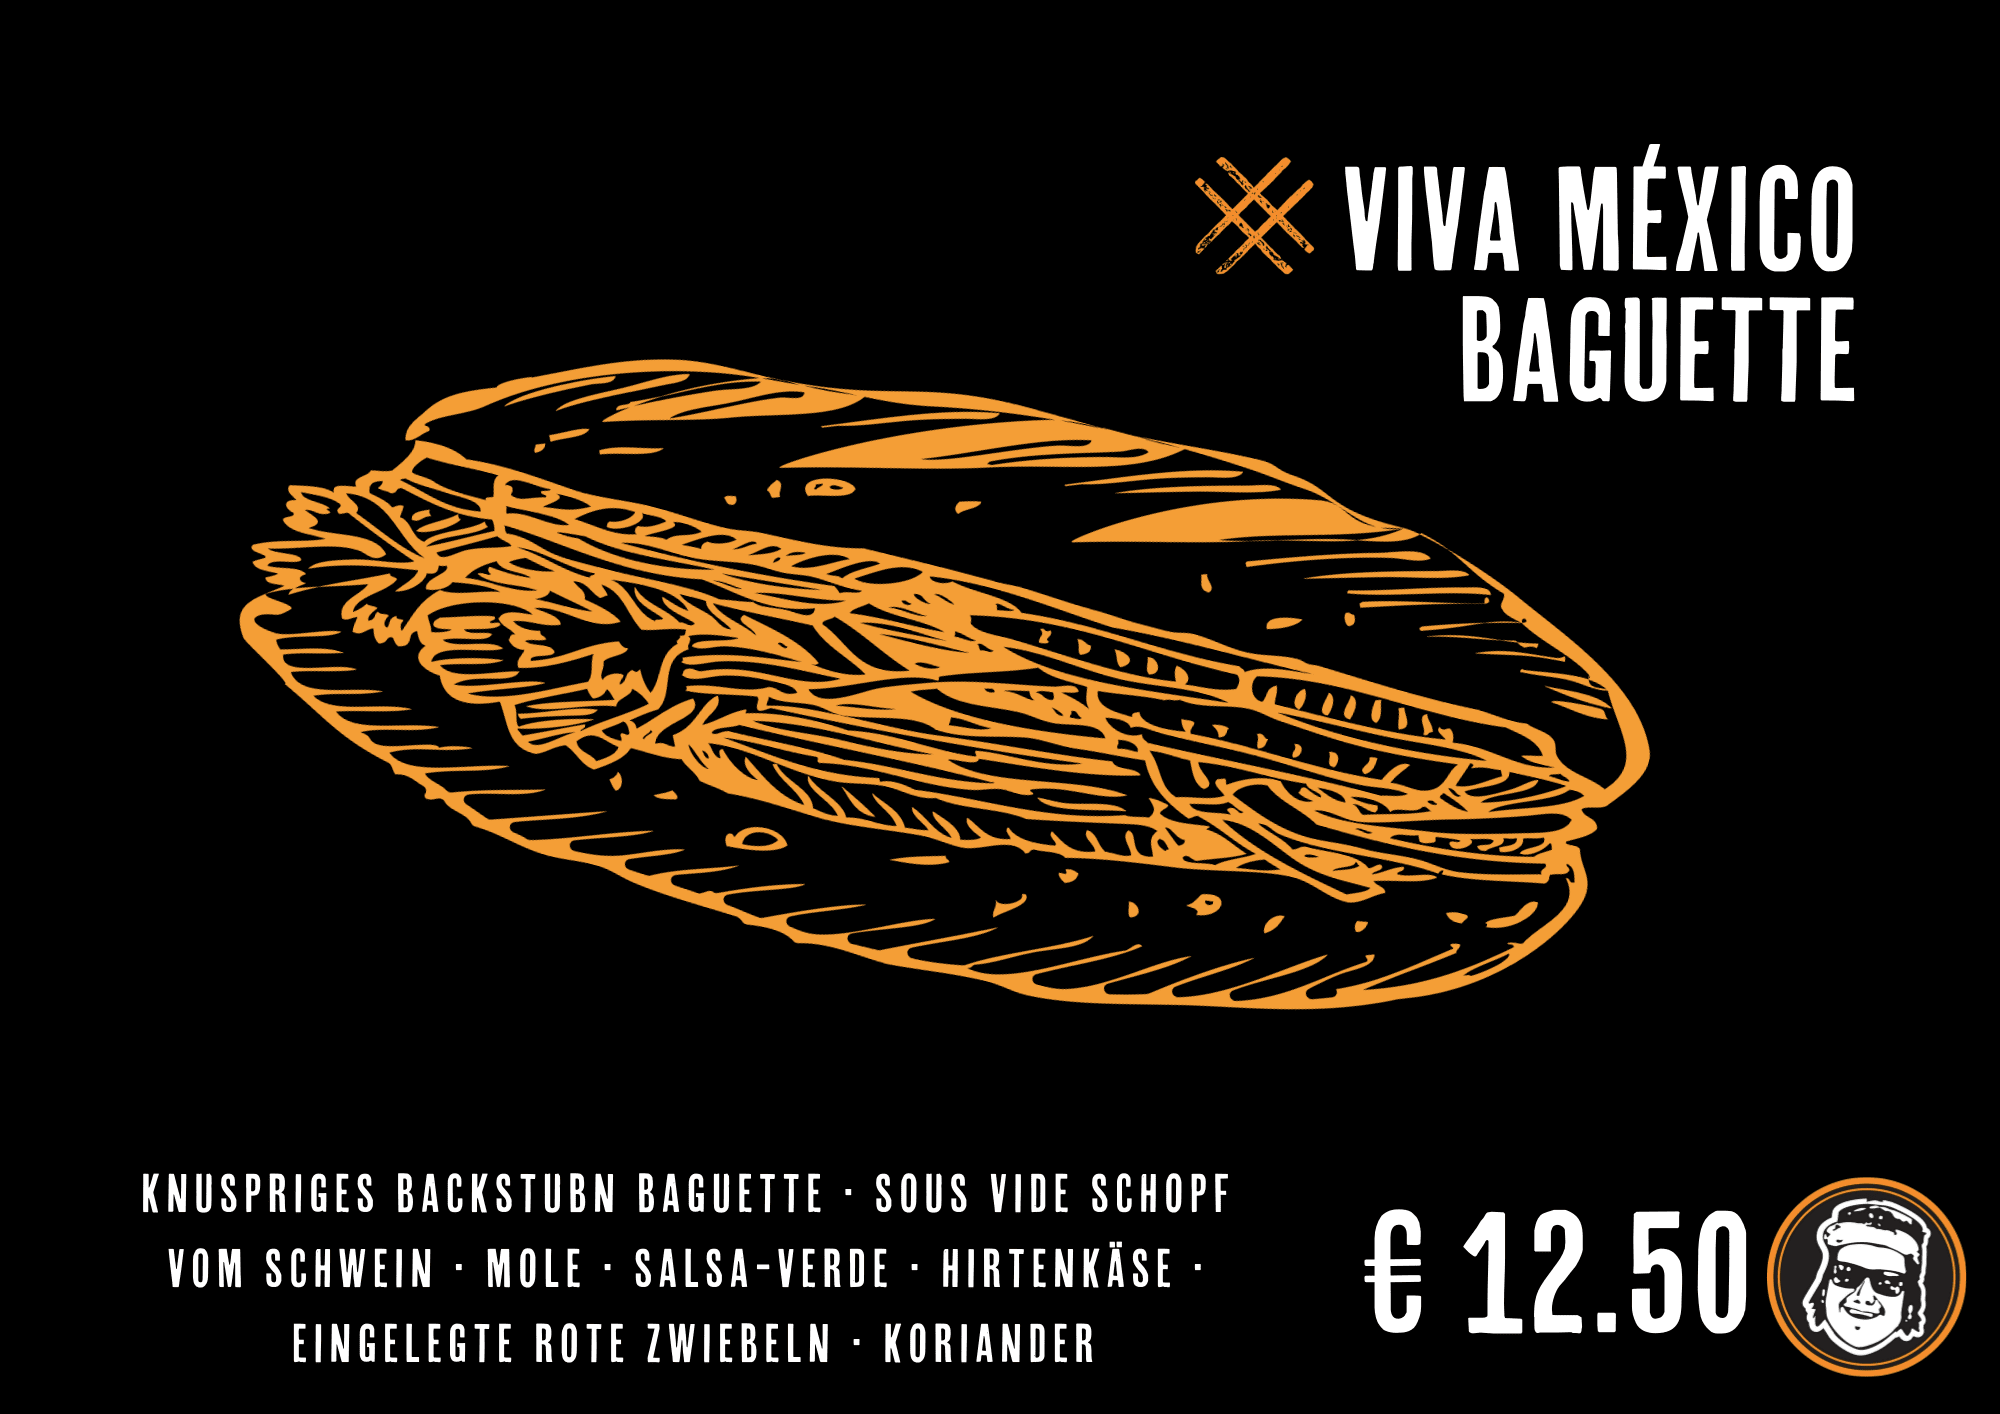 Viva Mexico Baguette